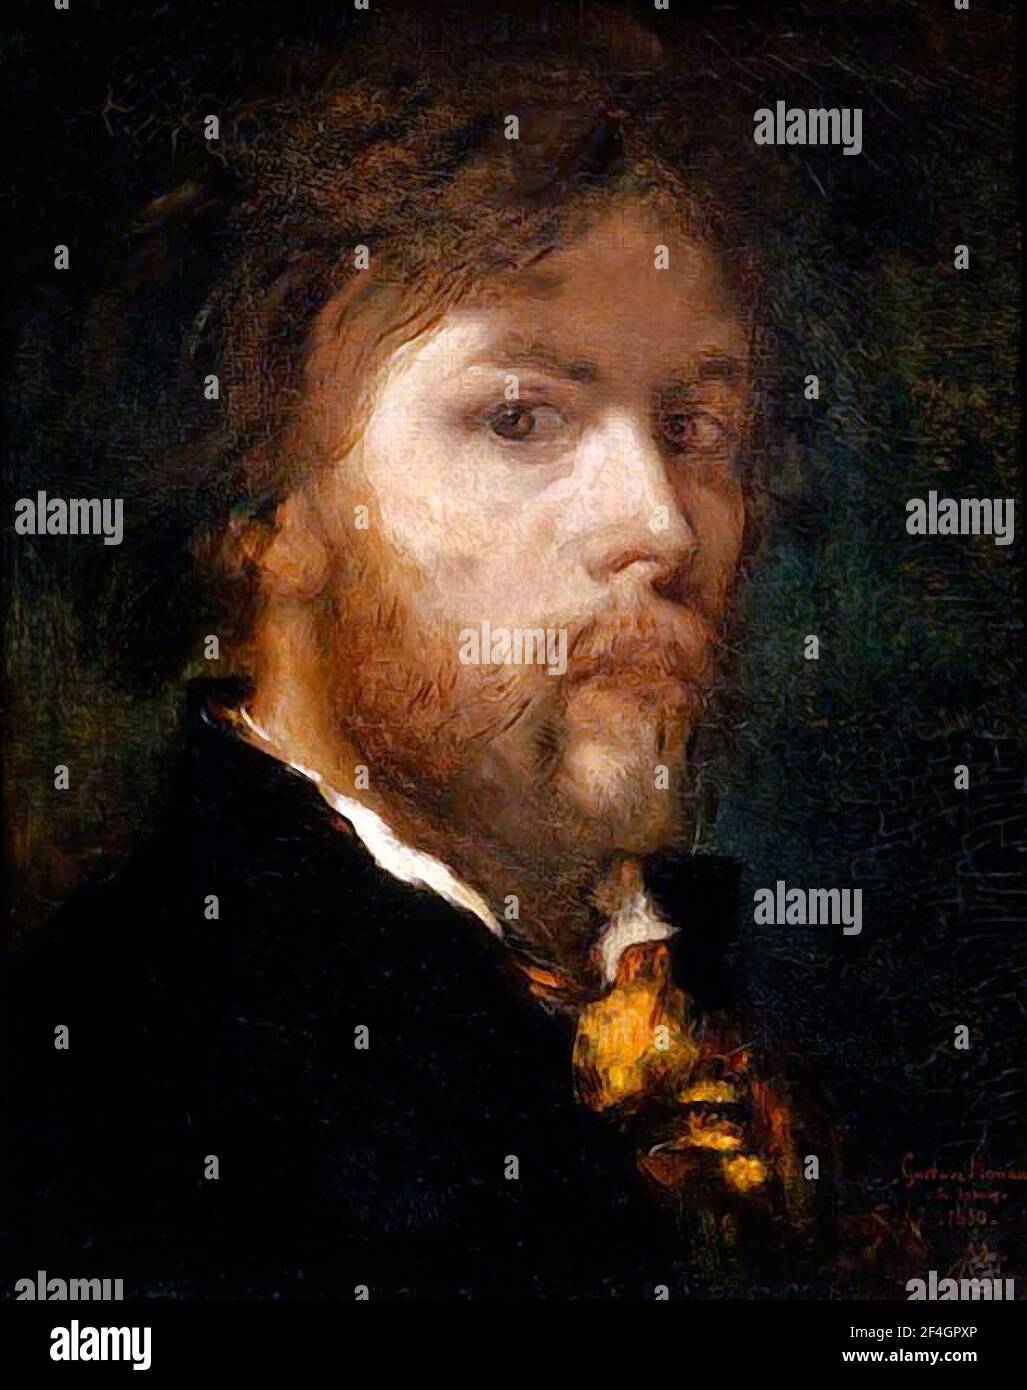 Gustave Moreau. Ritratto del pittore simbolista francese, Gustave Moreau (1826-1898), autoritratto, olio su tela, 1850 Foto Stock